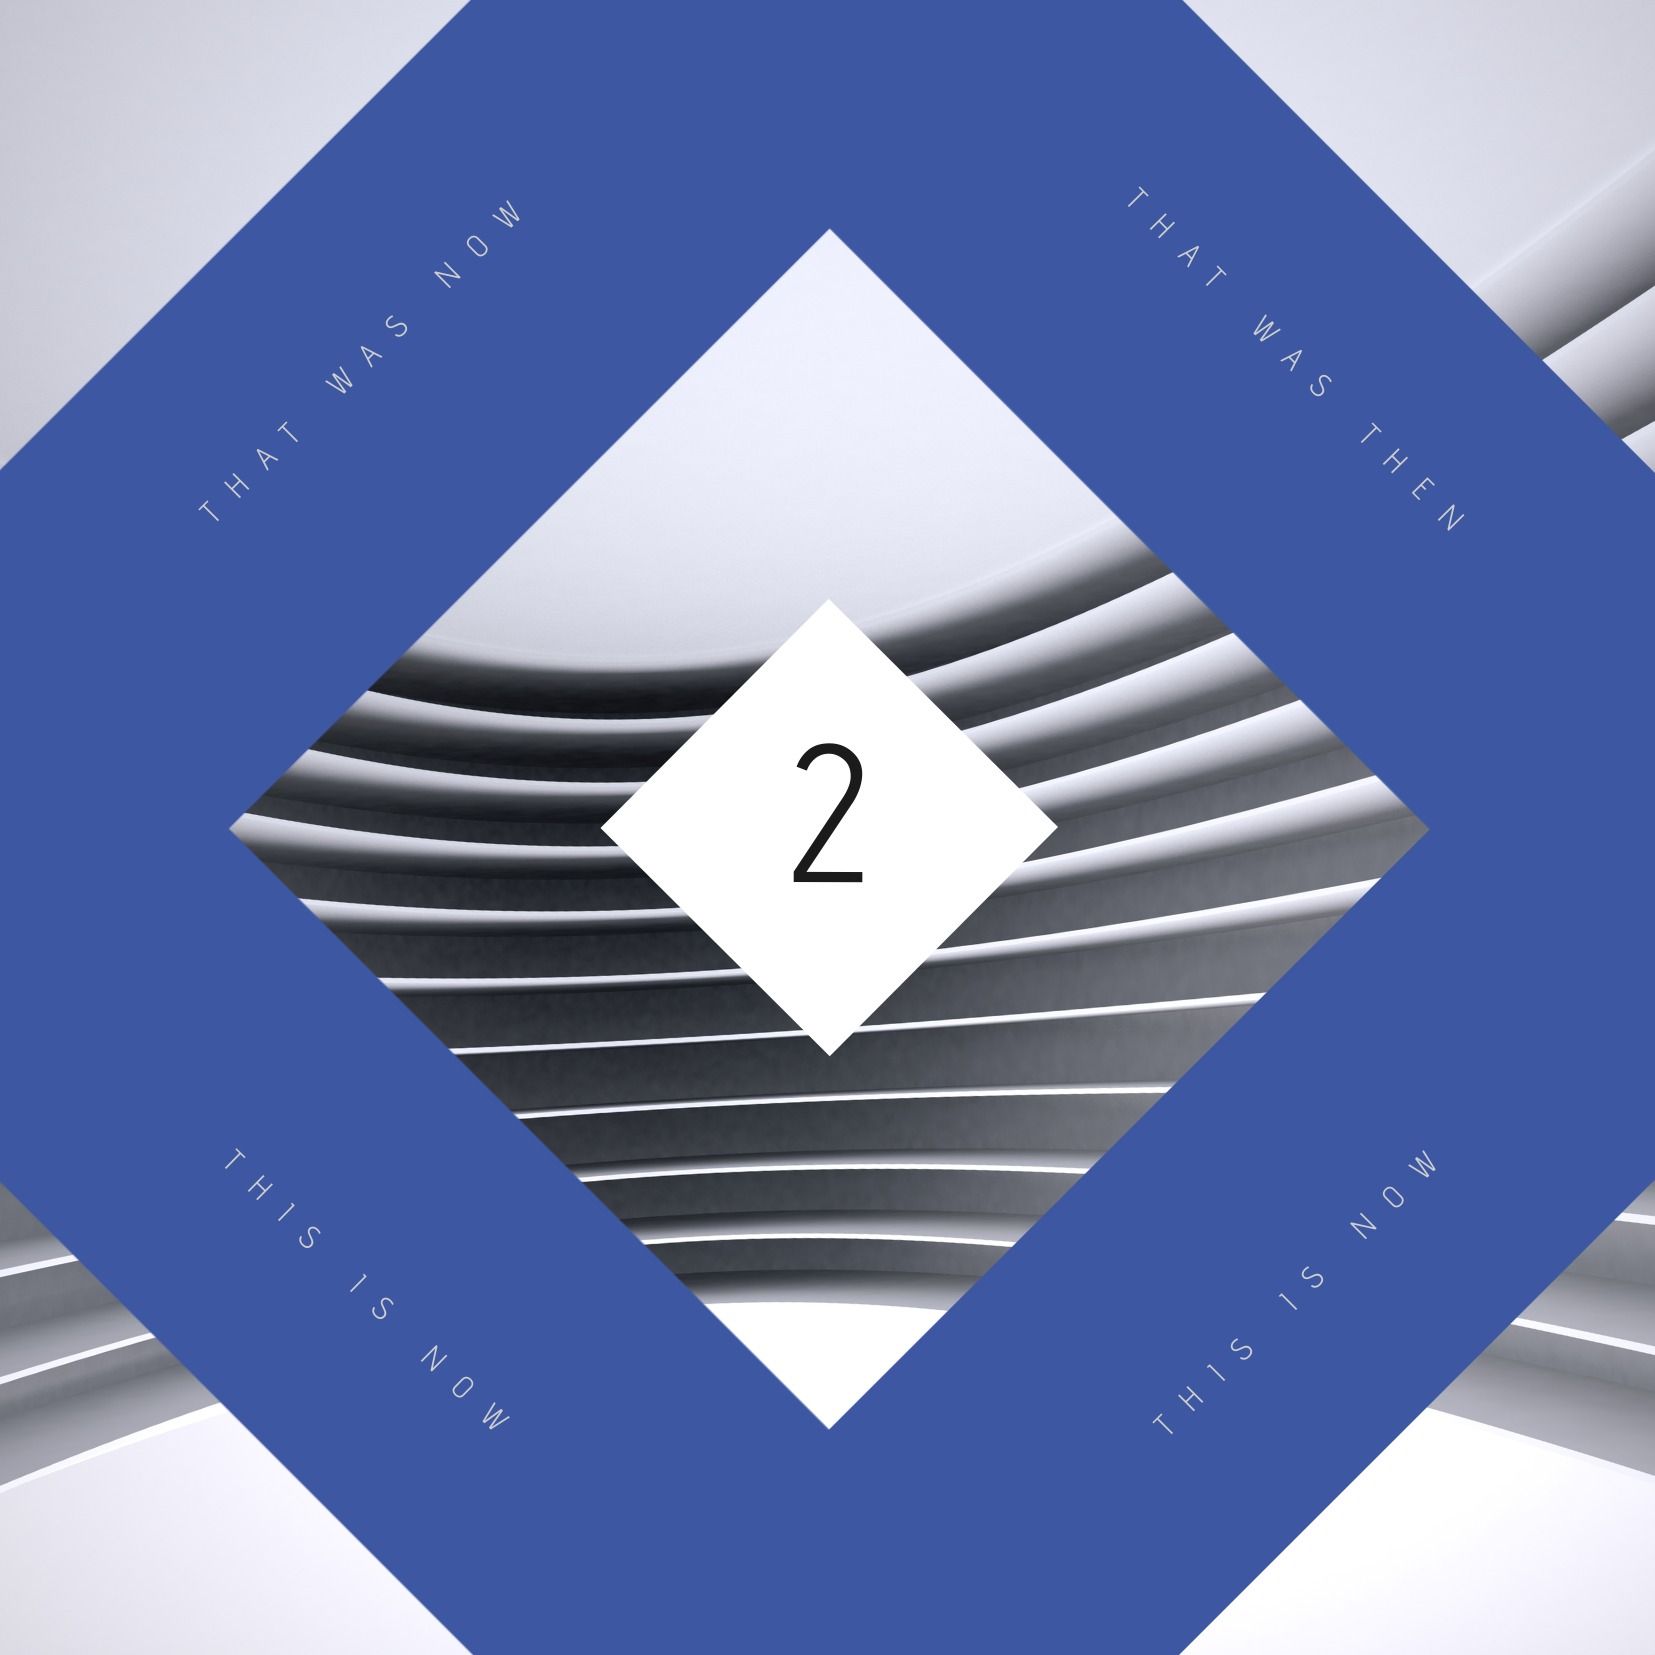 Albumcover mit blauem, rautenförmigem geometrischem Design – Rautenformen auf Albumcover – Bild